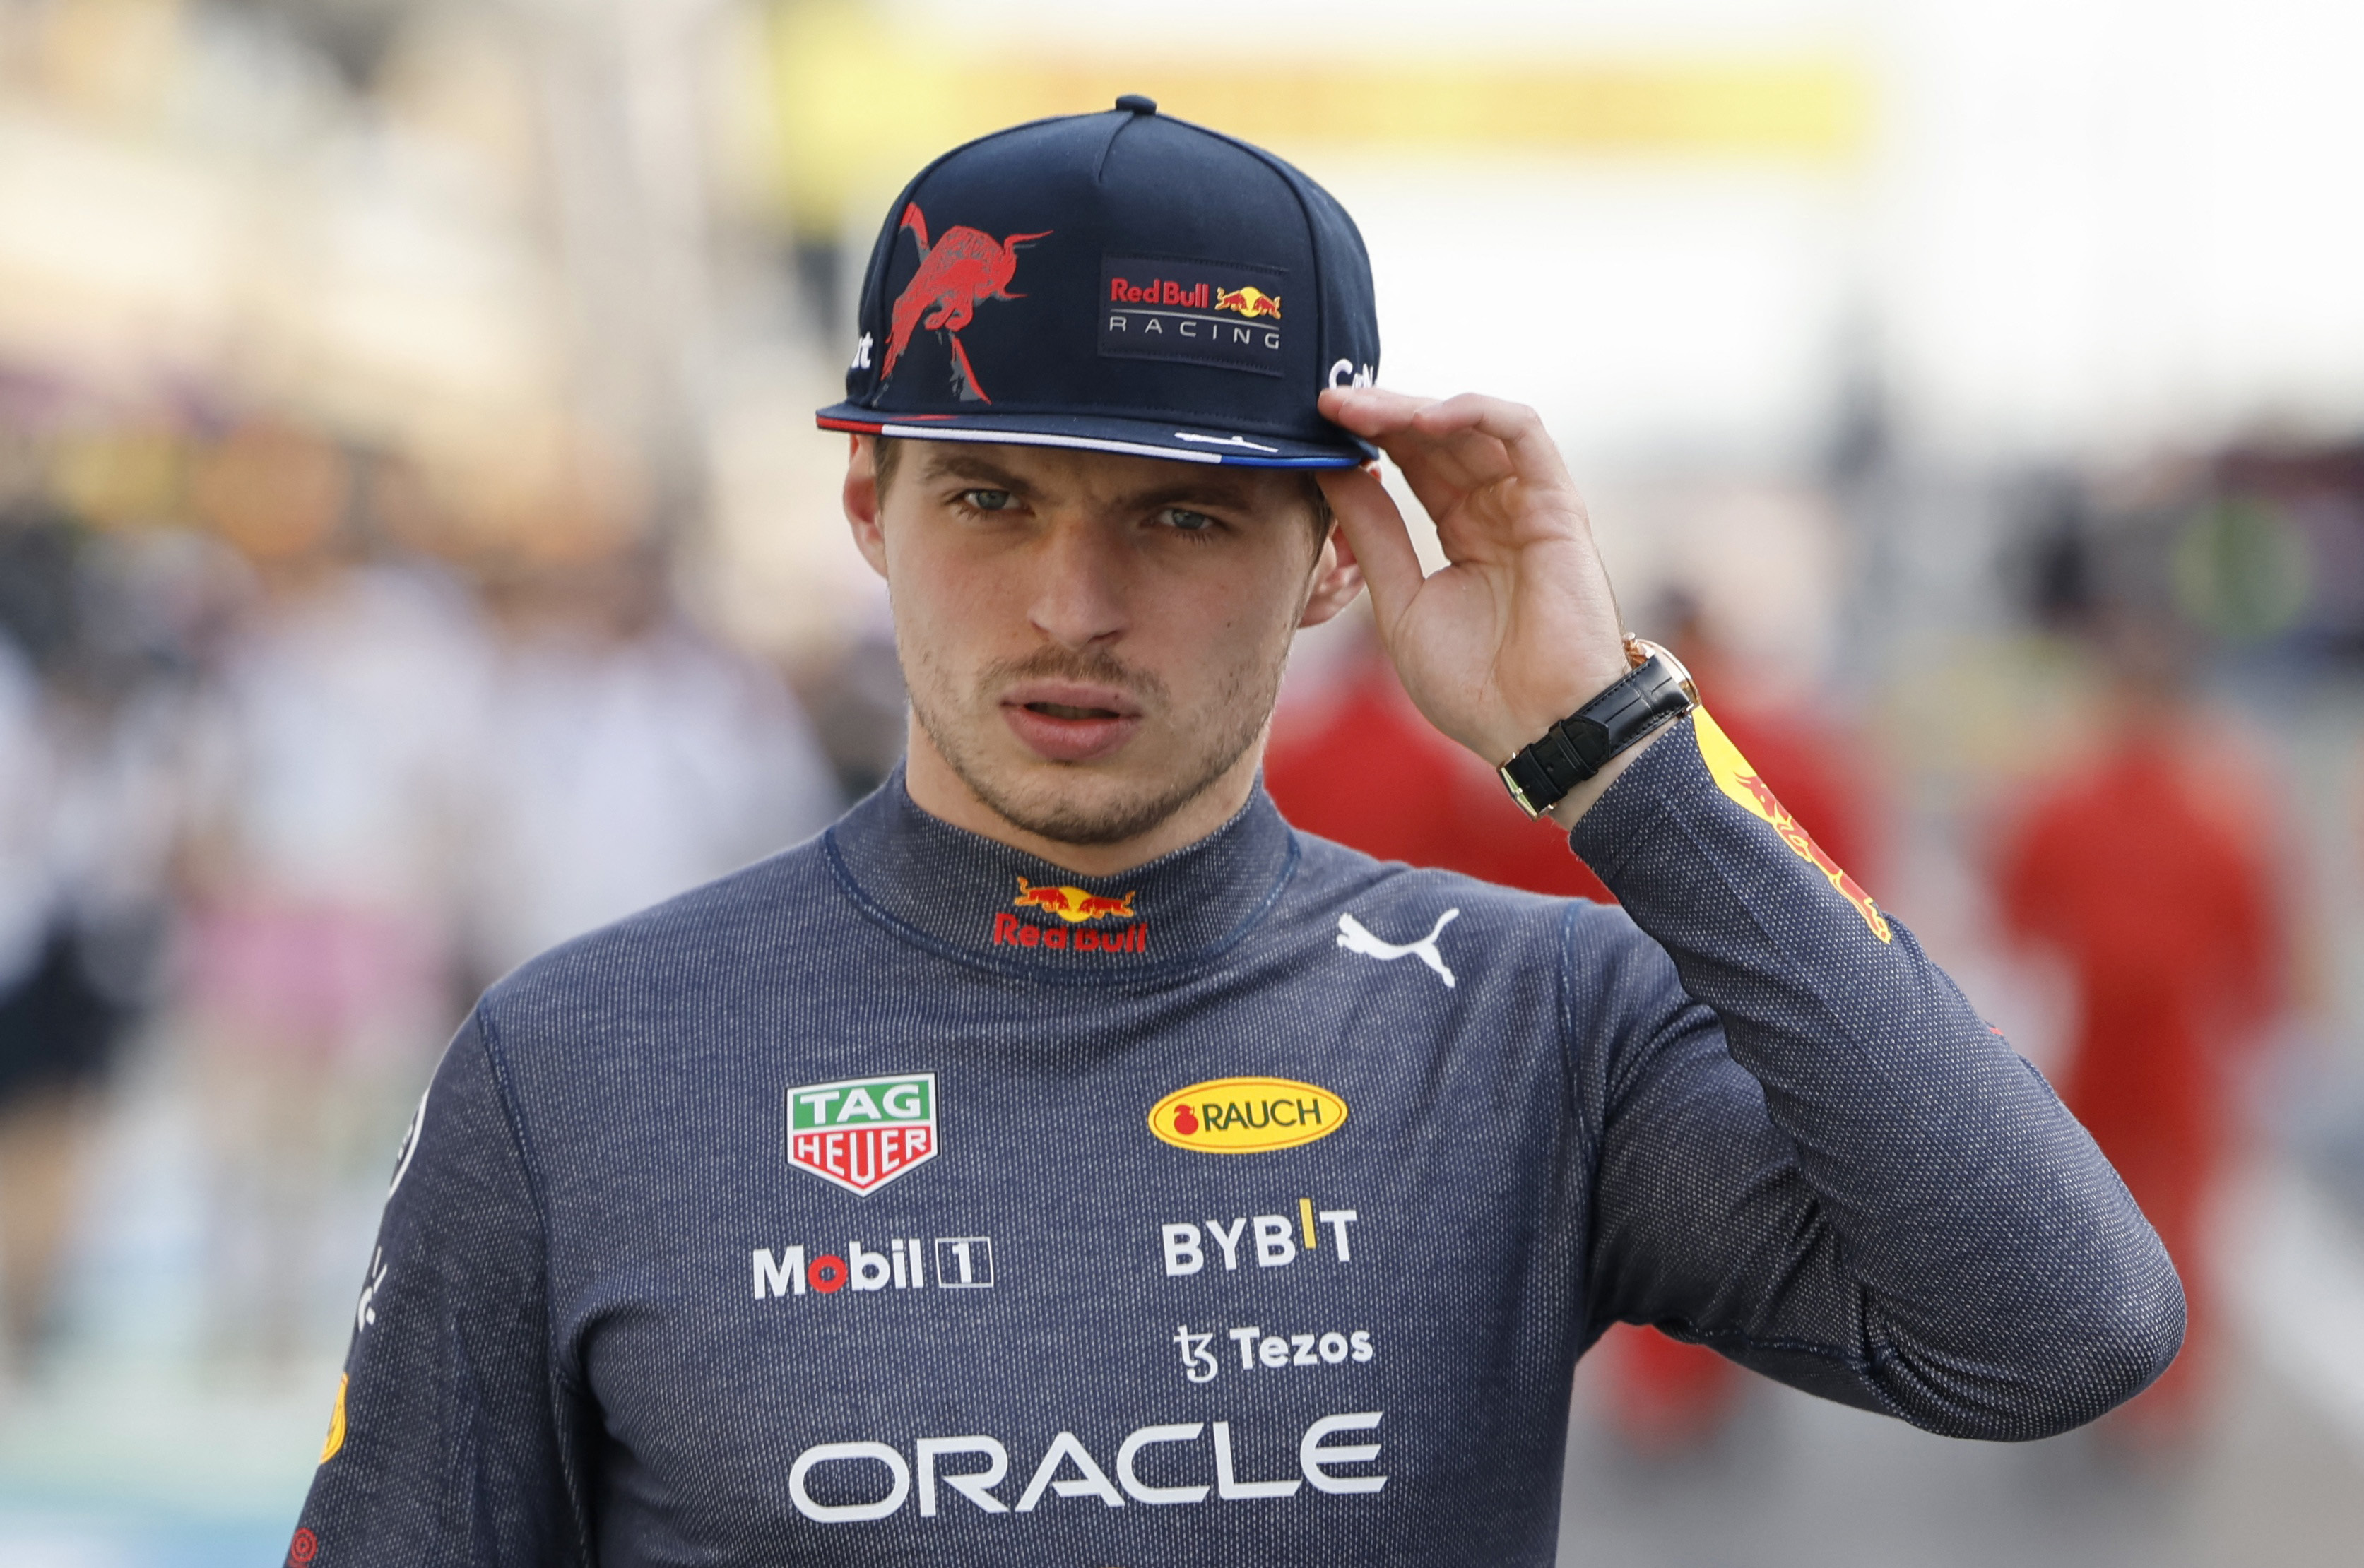 Motor racing-Verstappen aiming for his best start to season |